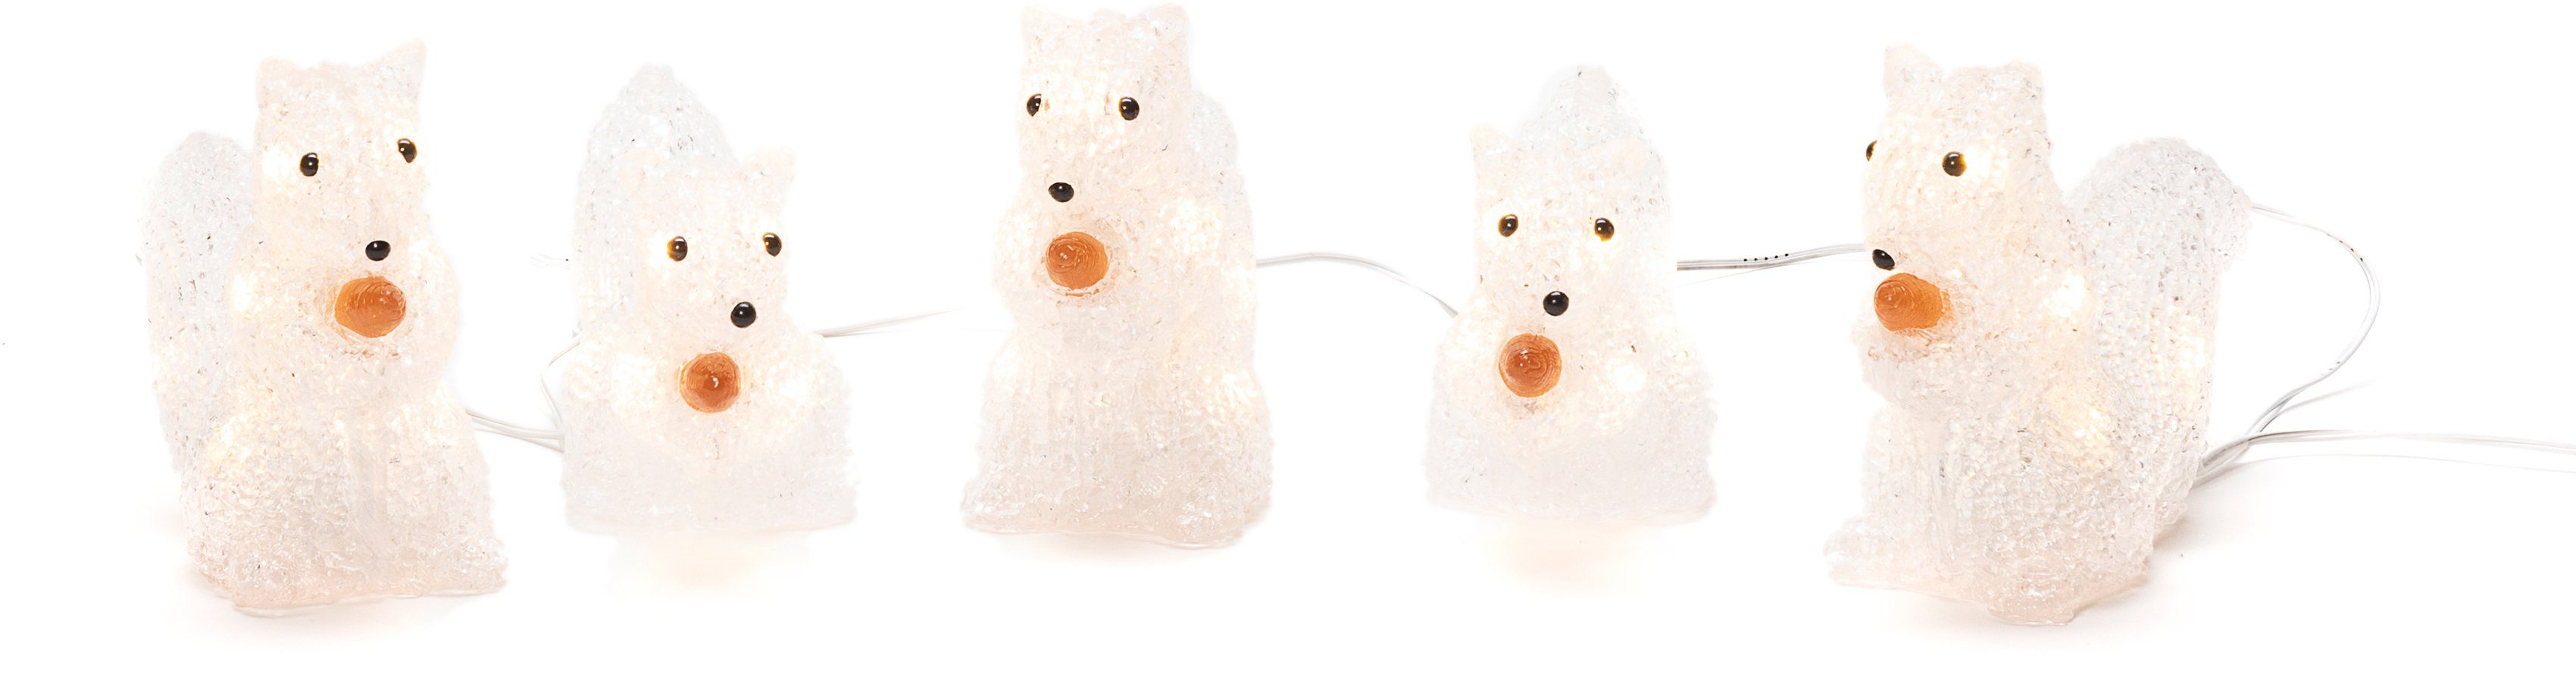 LED-Lichterkette warmweissen Dioden, Weihnachtsdeko 40 Eichhörnchen, Niedliche LED-Lichterkette mit KONSTSMIDE aussen, Acryl-Eichhörnchen mit